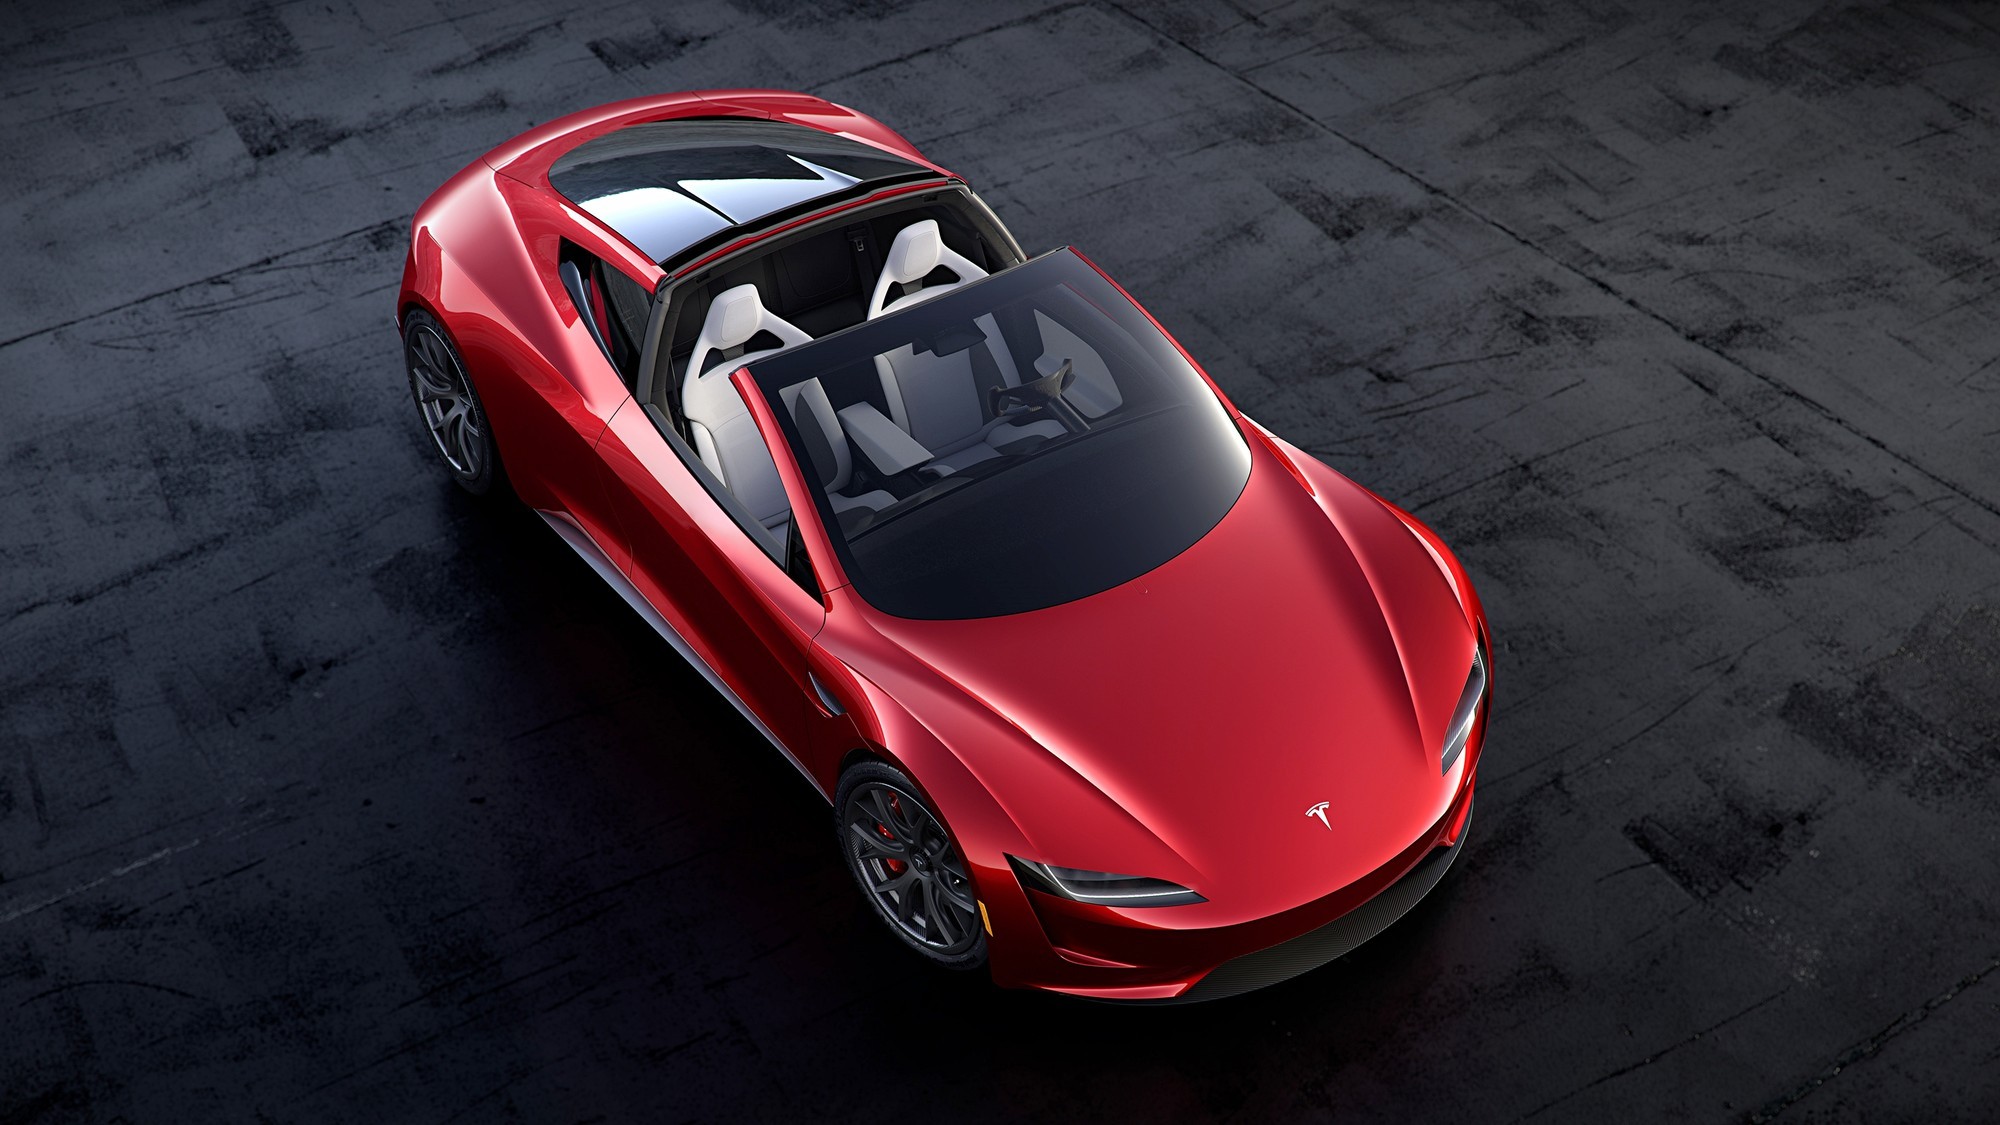 Идёт на взлёт: Илон Маск пообещал снабдить новый Tesla Roadster ракетными технологиями авто,авто и мото,автосалон,автосамоделки,водителю на заметку,машины,новости автомира,тюнинг